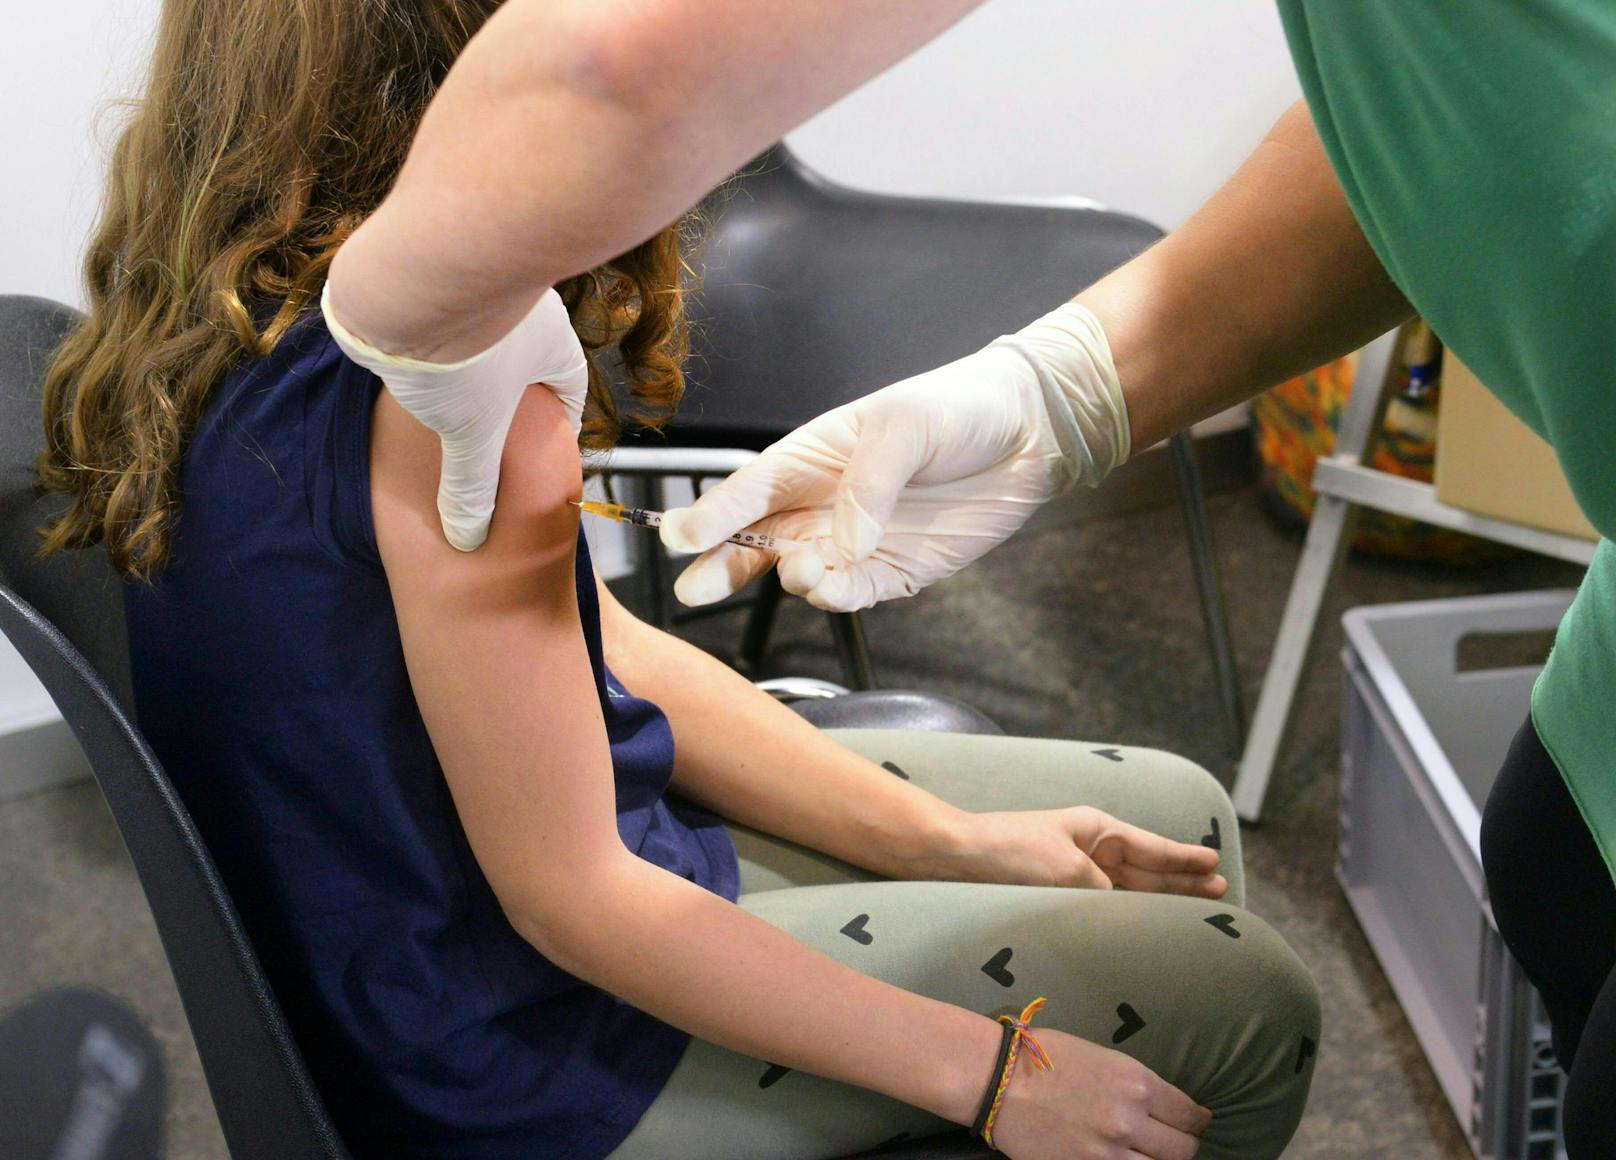 33 Kinder erhielten einen falschen Impfstoff. Symbolbild.